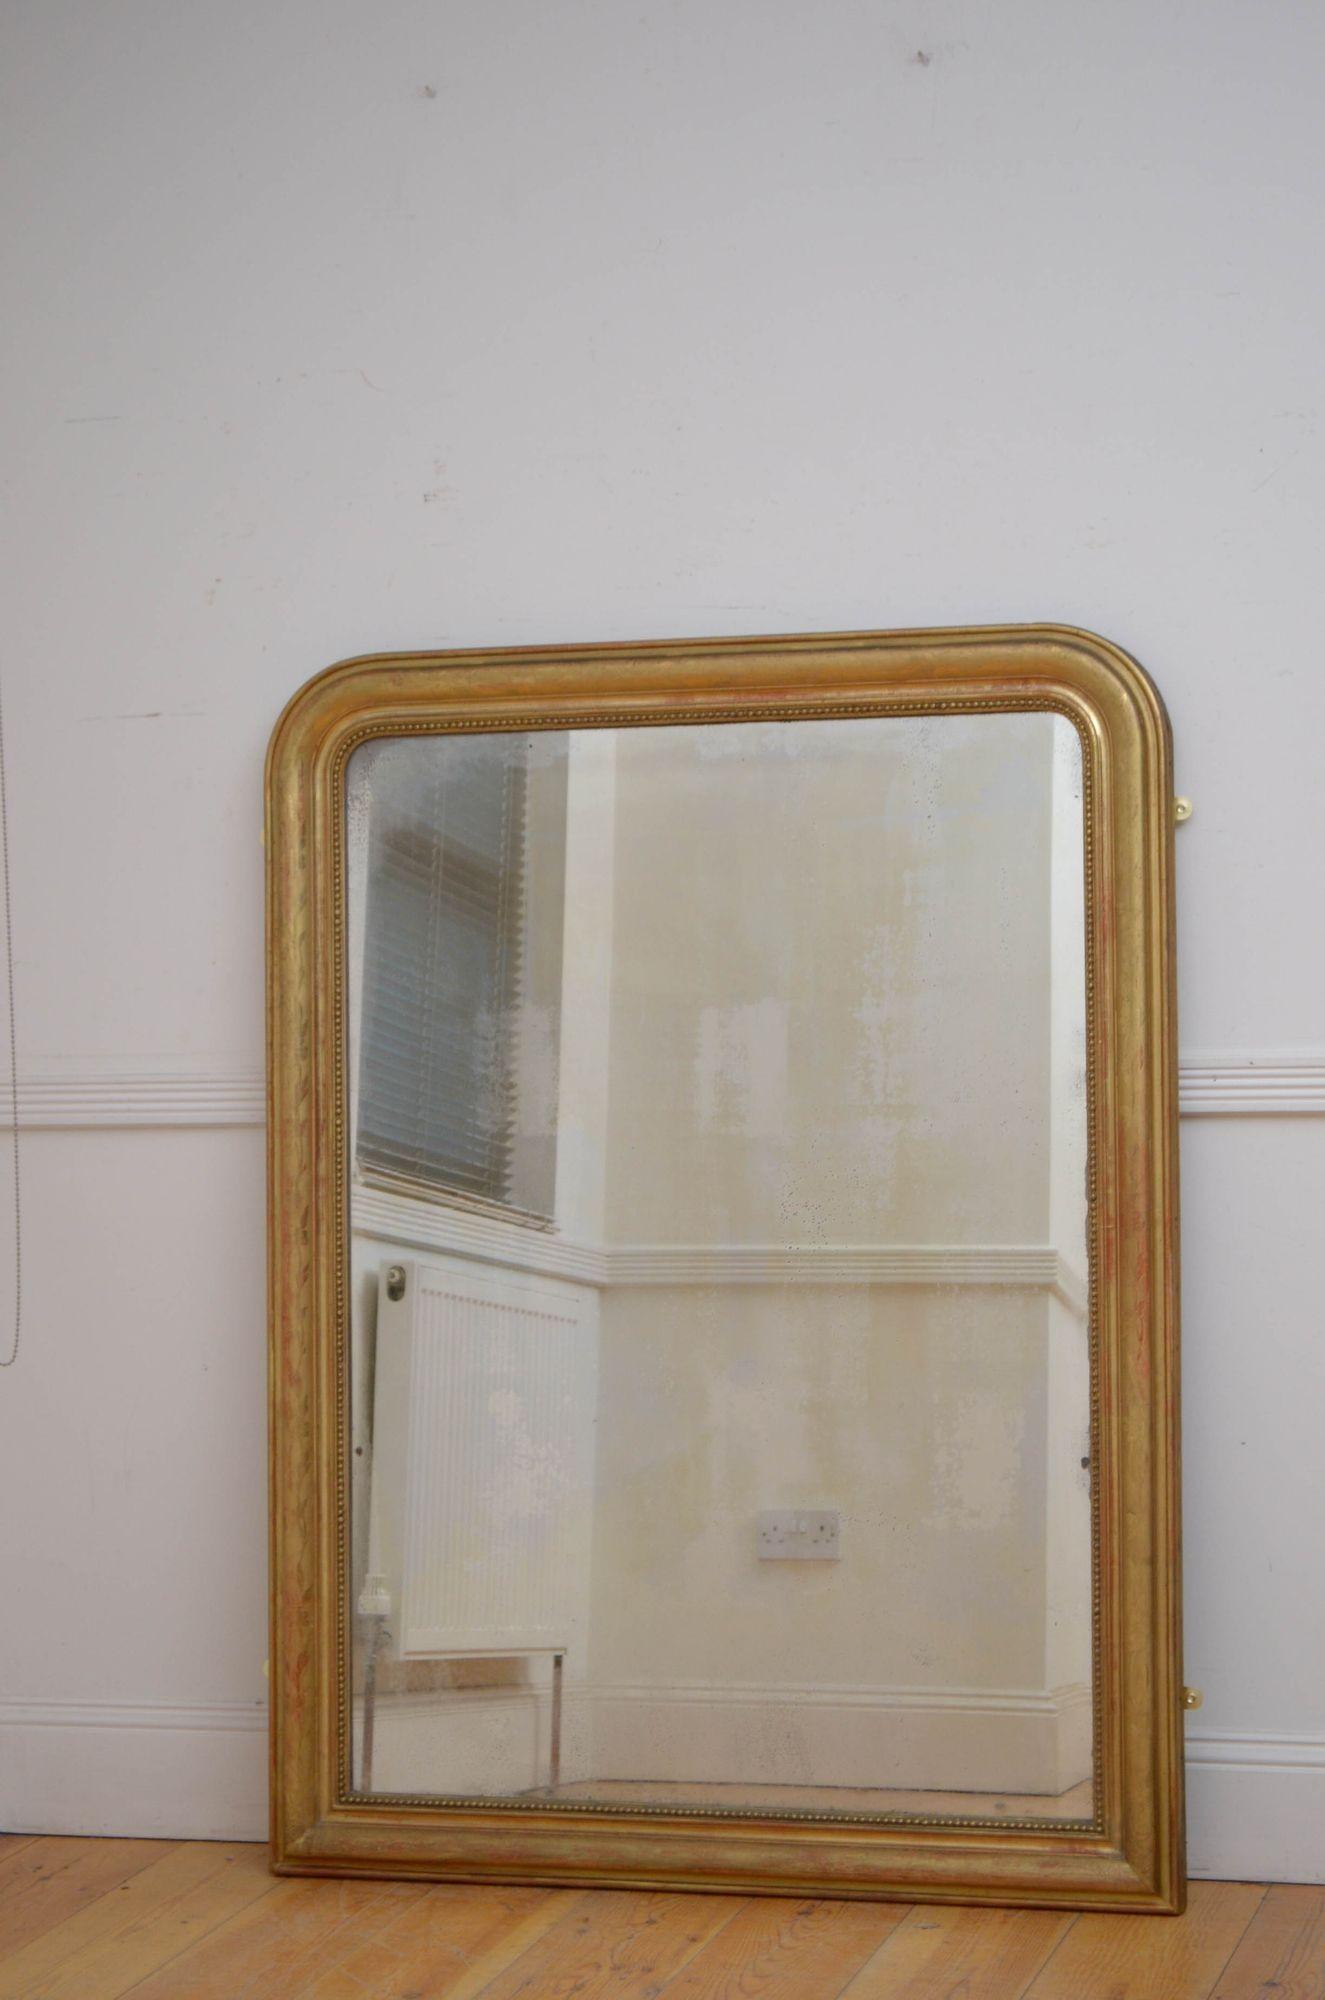 Sn5477 Attraktiver vergoldeter Wand- oder Pfeilerspiegel aus dem XIX. Jahrhundert, mit ursprünglichem Glas mit einigen Mängeln, in einem perlenbesetzten und profilierten Rahmen mit floralen Verzierungen. Dieser antike Spiegel hat noch das